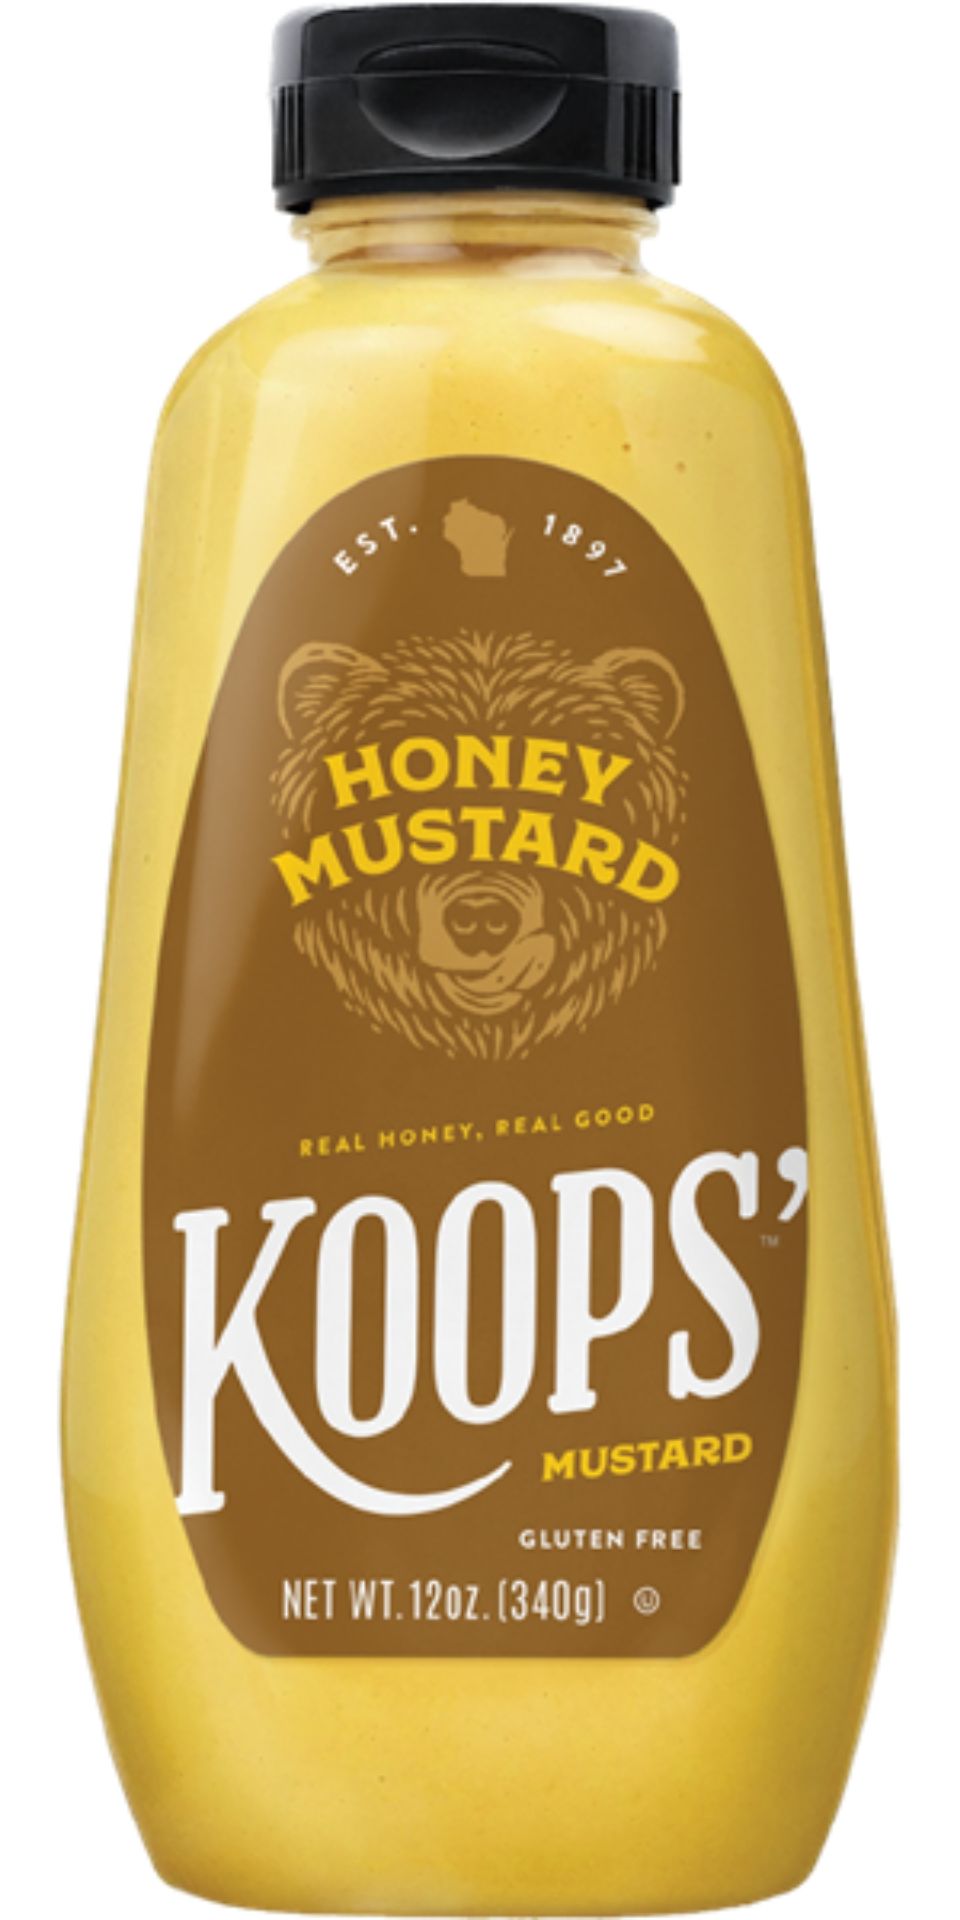 koops' honey mustard